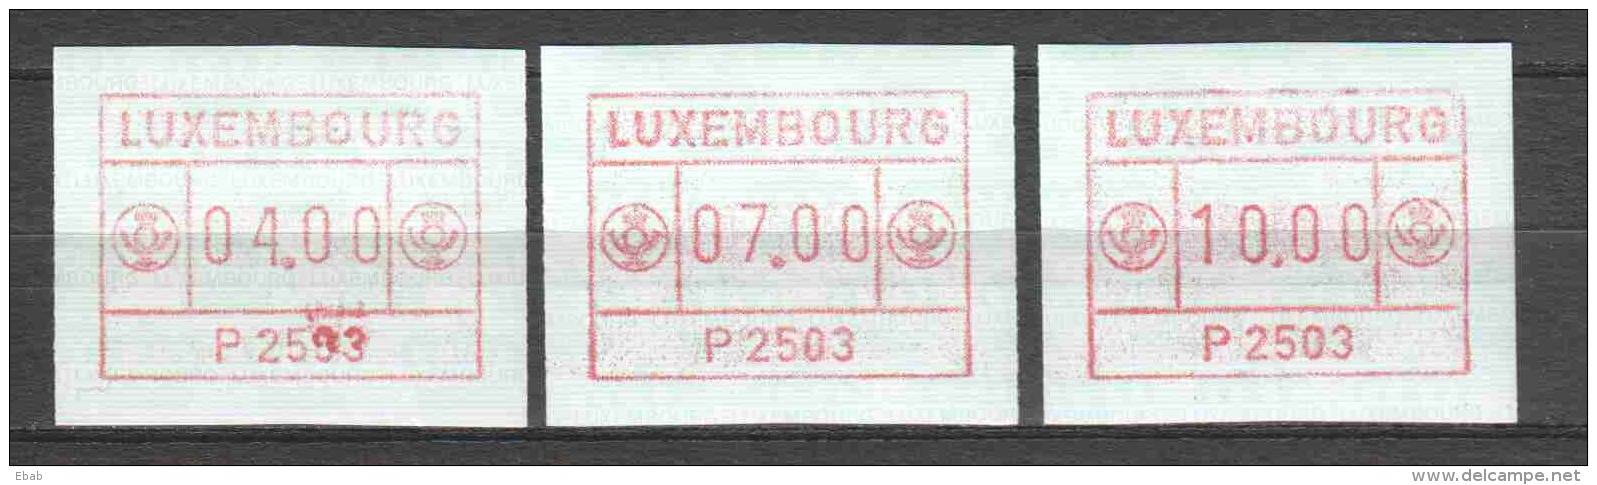 Luxemburg 1983 Automatmarken (2) - Frankeervignetten